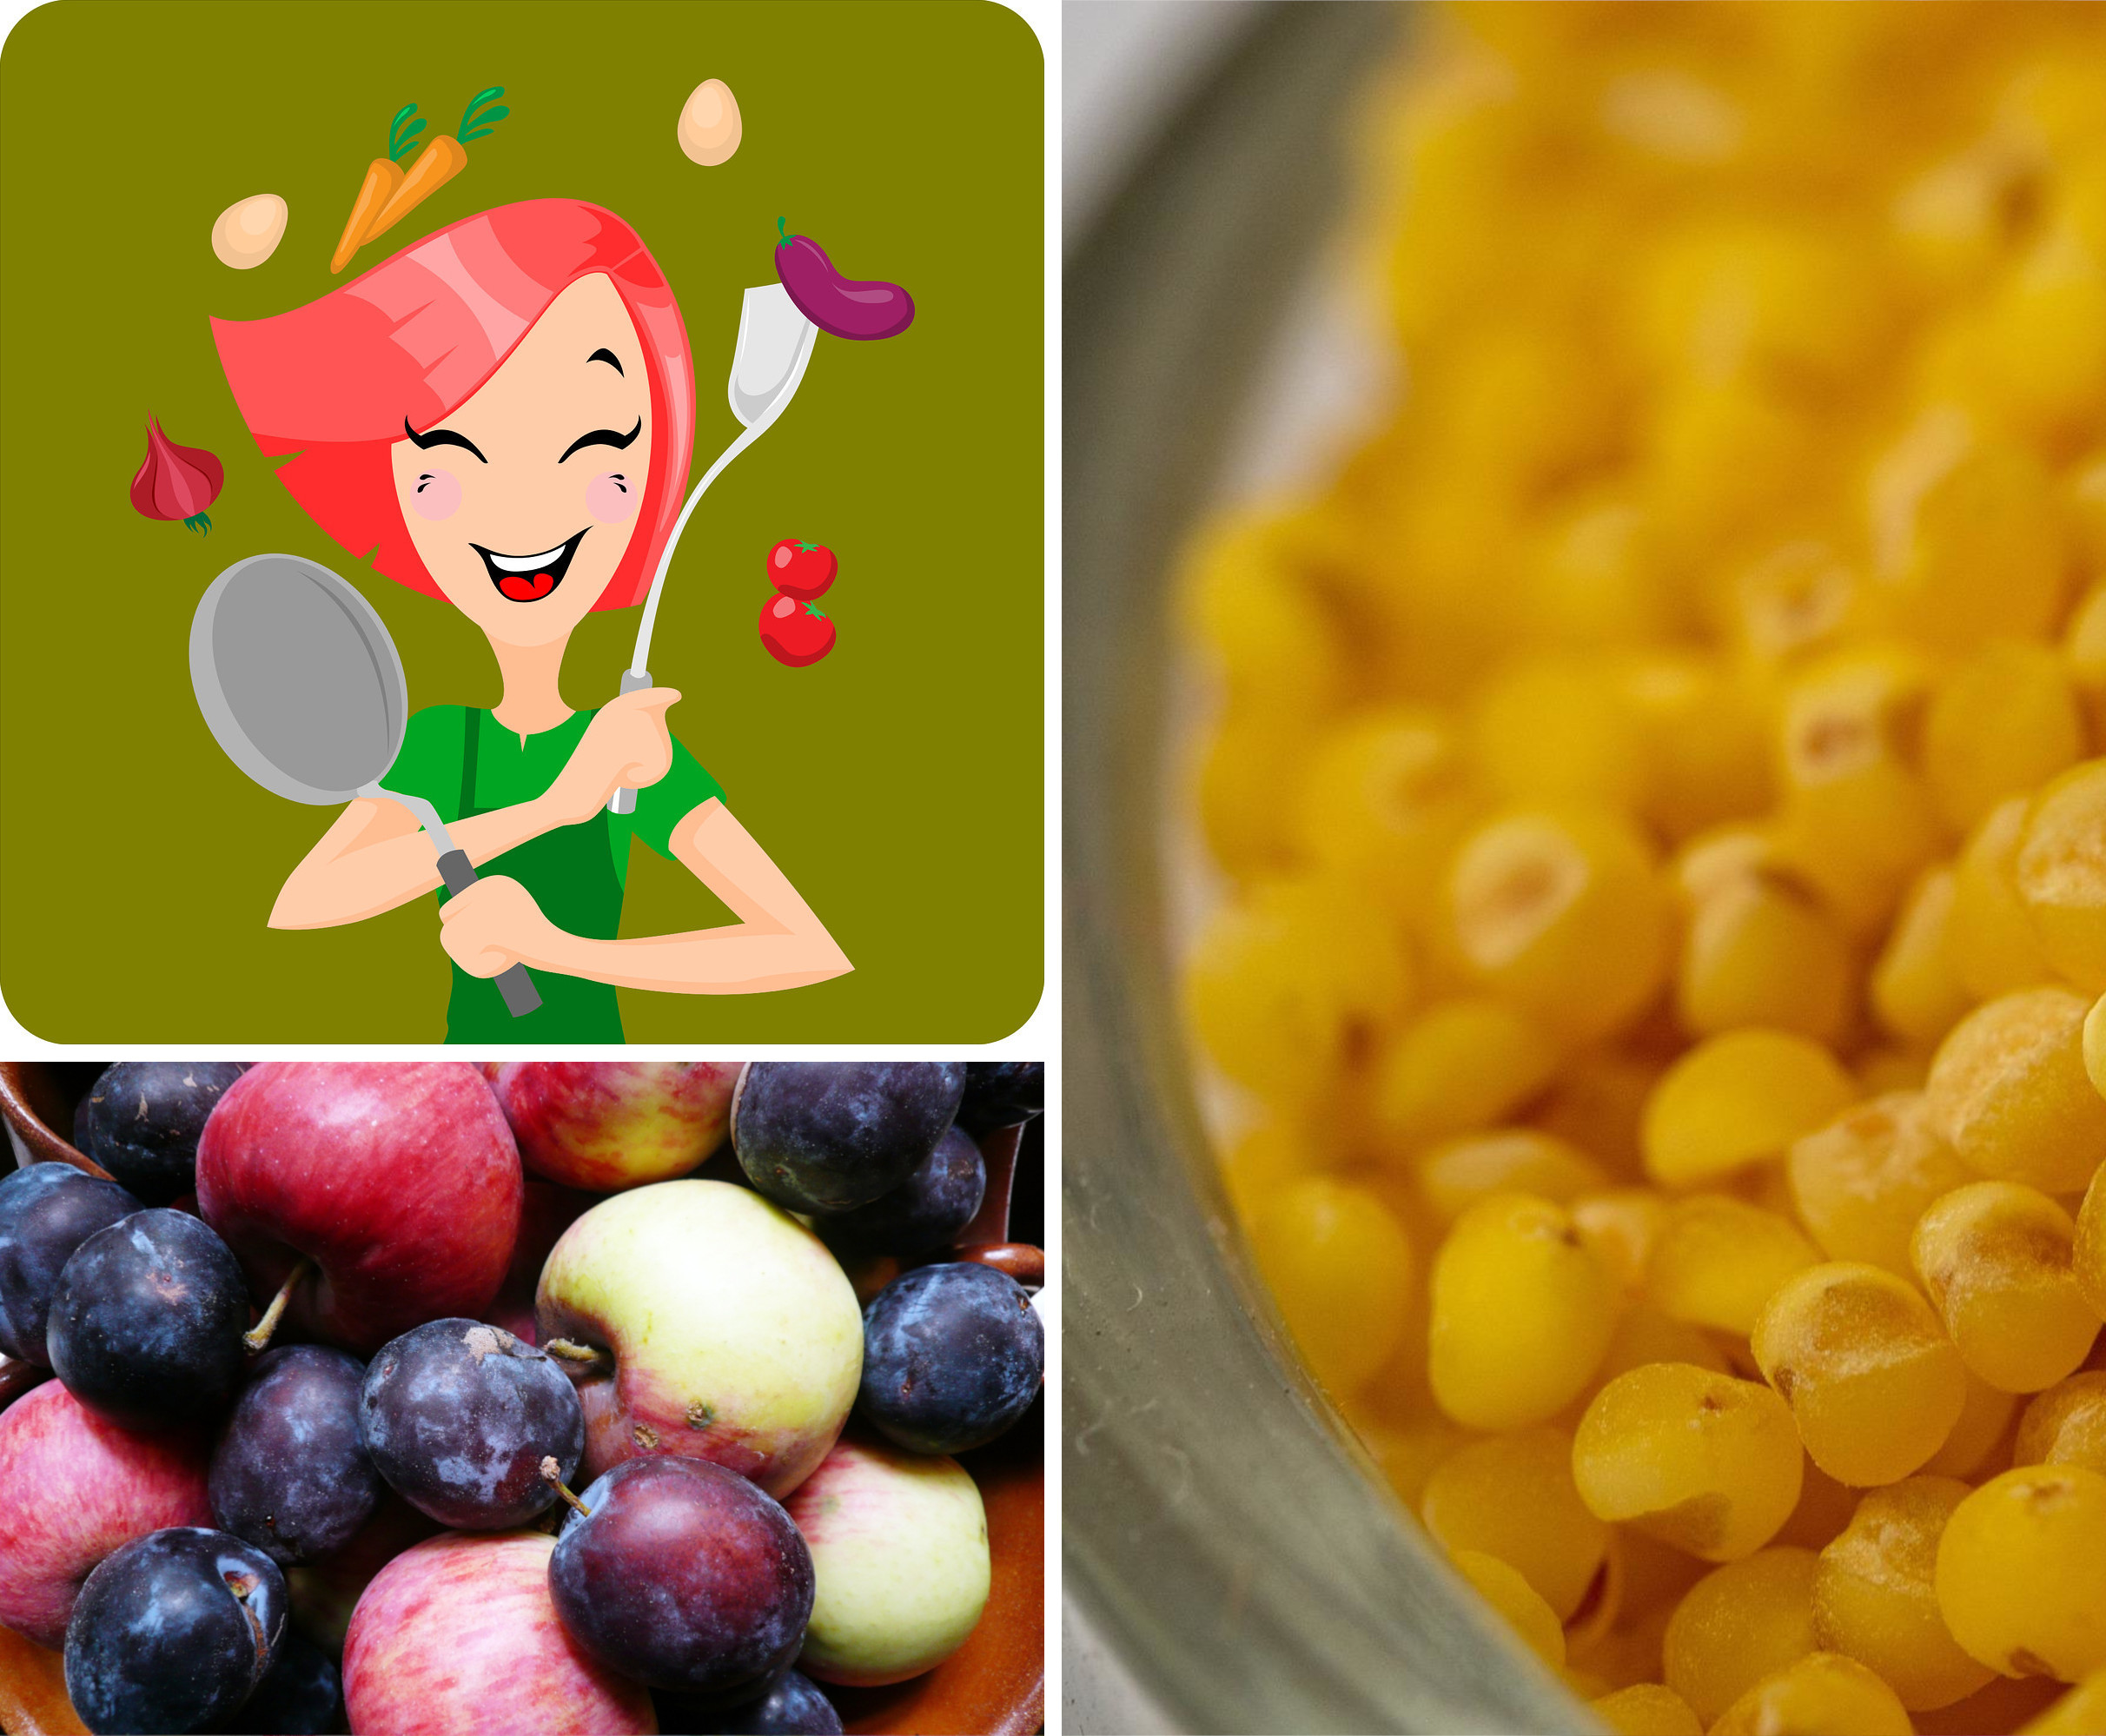 Koláž z obrázků k akci Vaříme zdravě, chutně, levně k tématu agar (zdroj: www.pixabay.com)